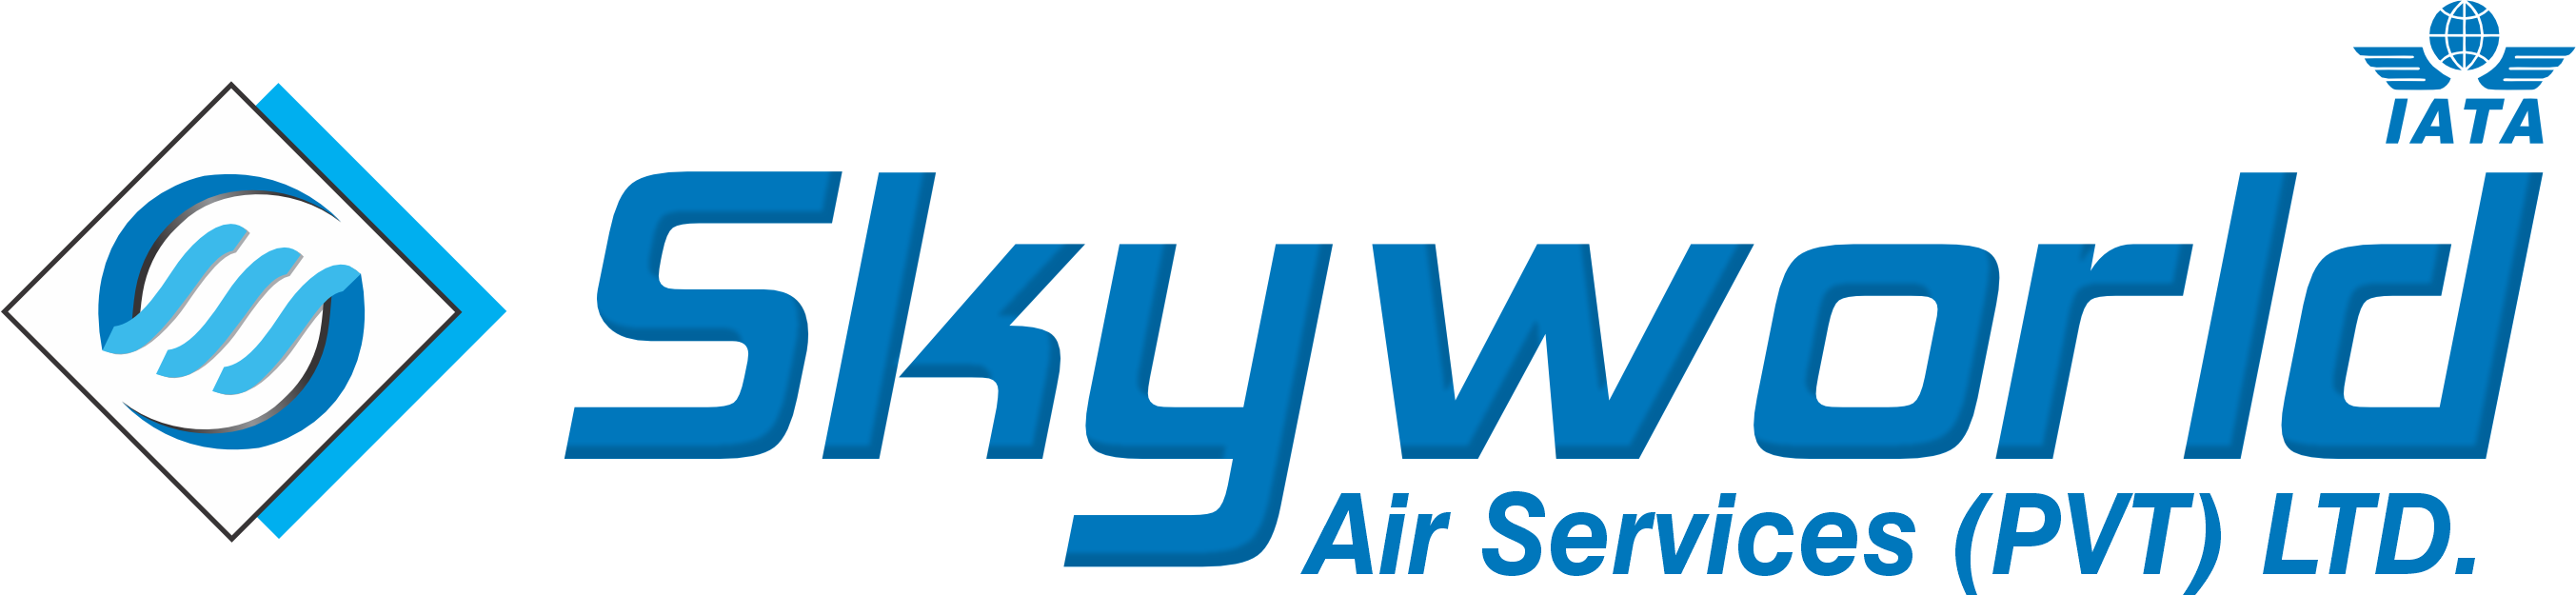 SKYWORLD AIR SERVICES